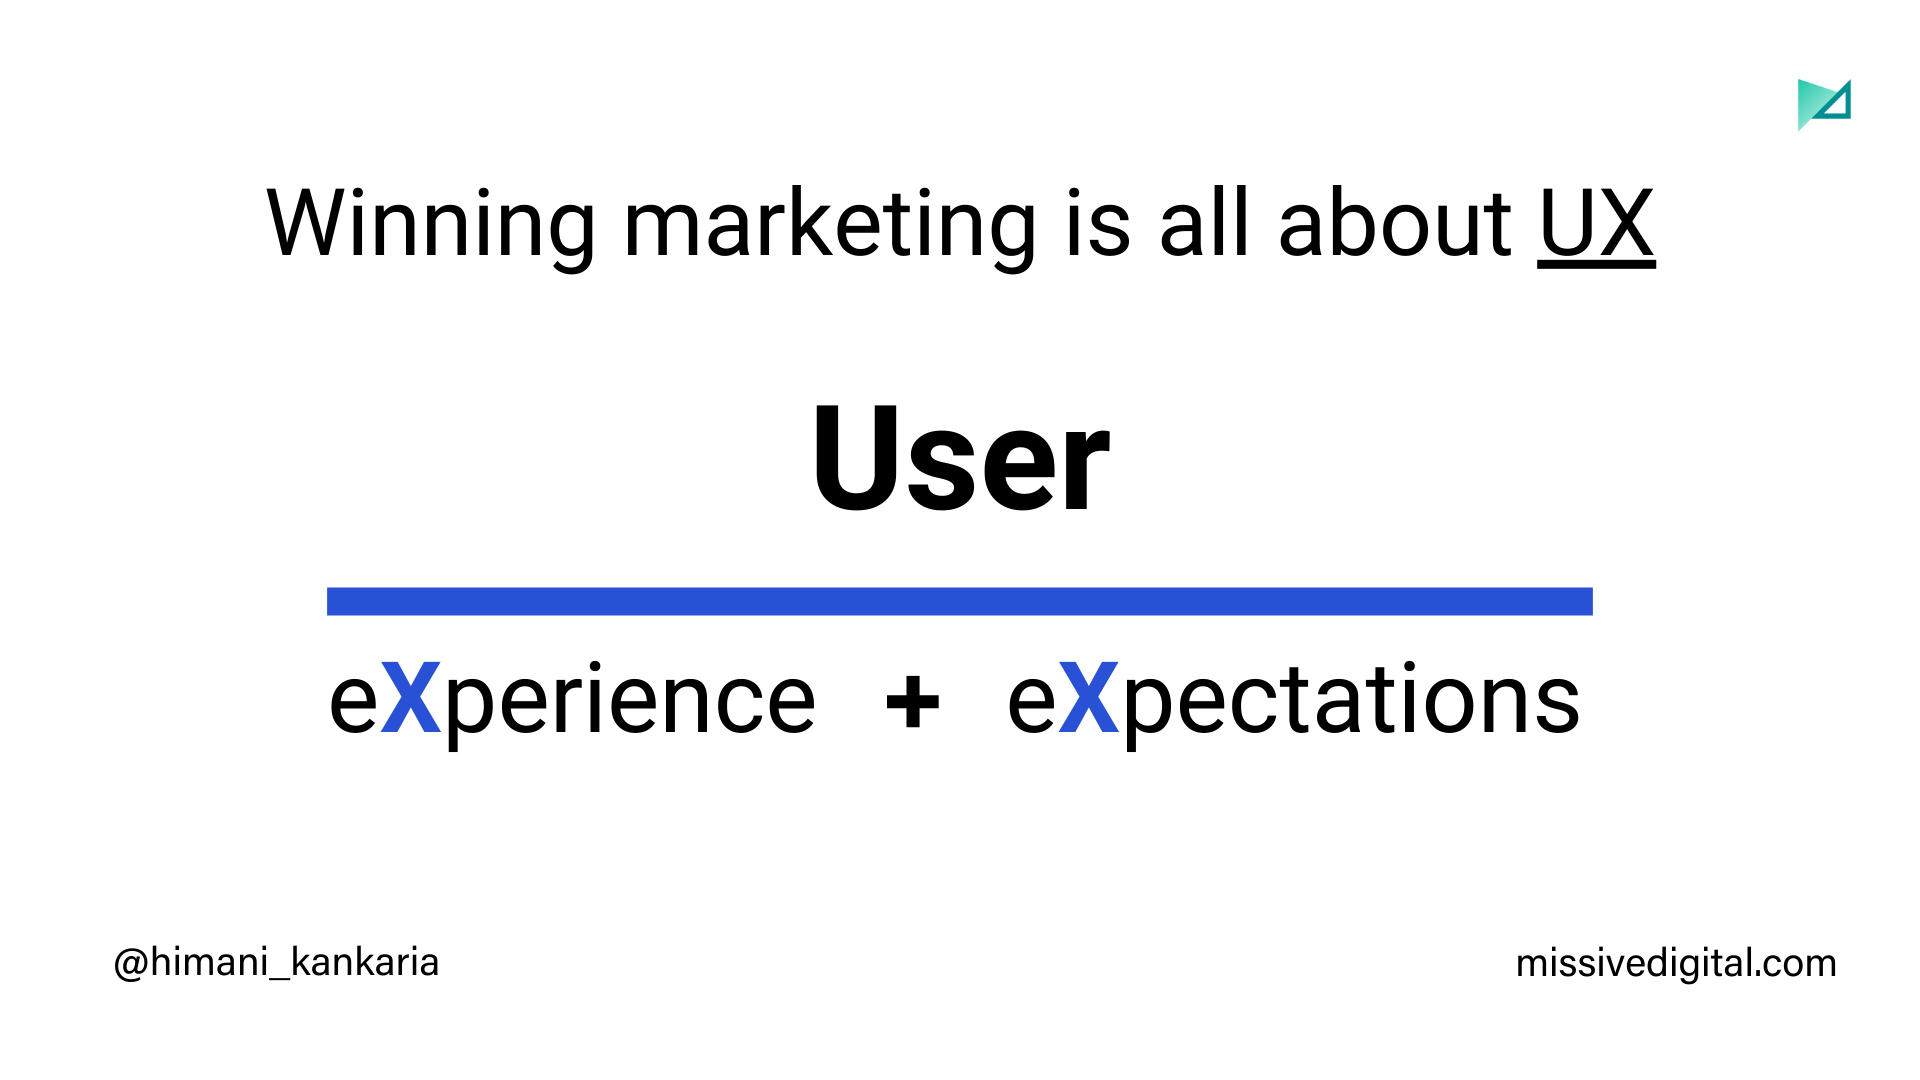 Успех в маркетинге зависит от UX: пользовательского опыта и пользовательских ожиданий. Факторы неудачи контент-стратегии.